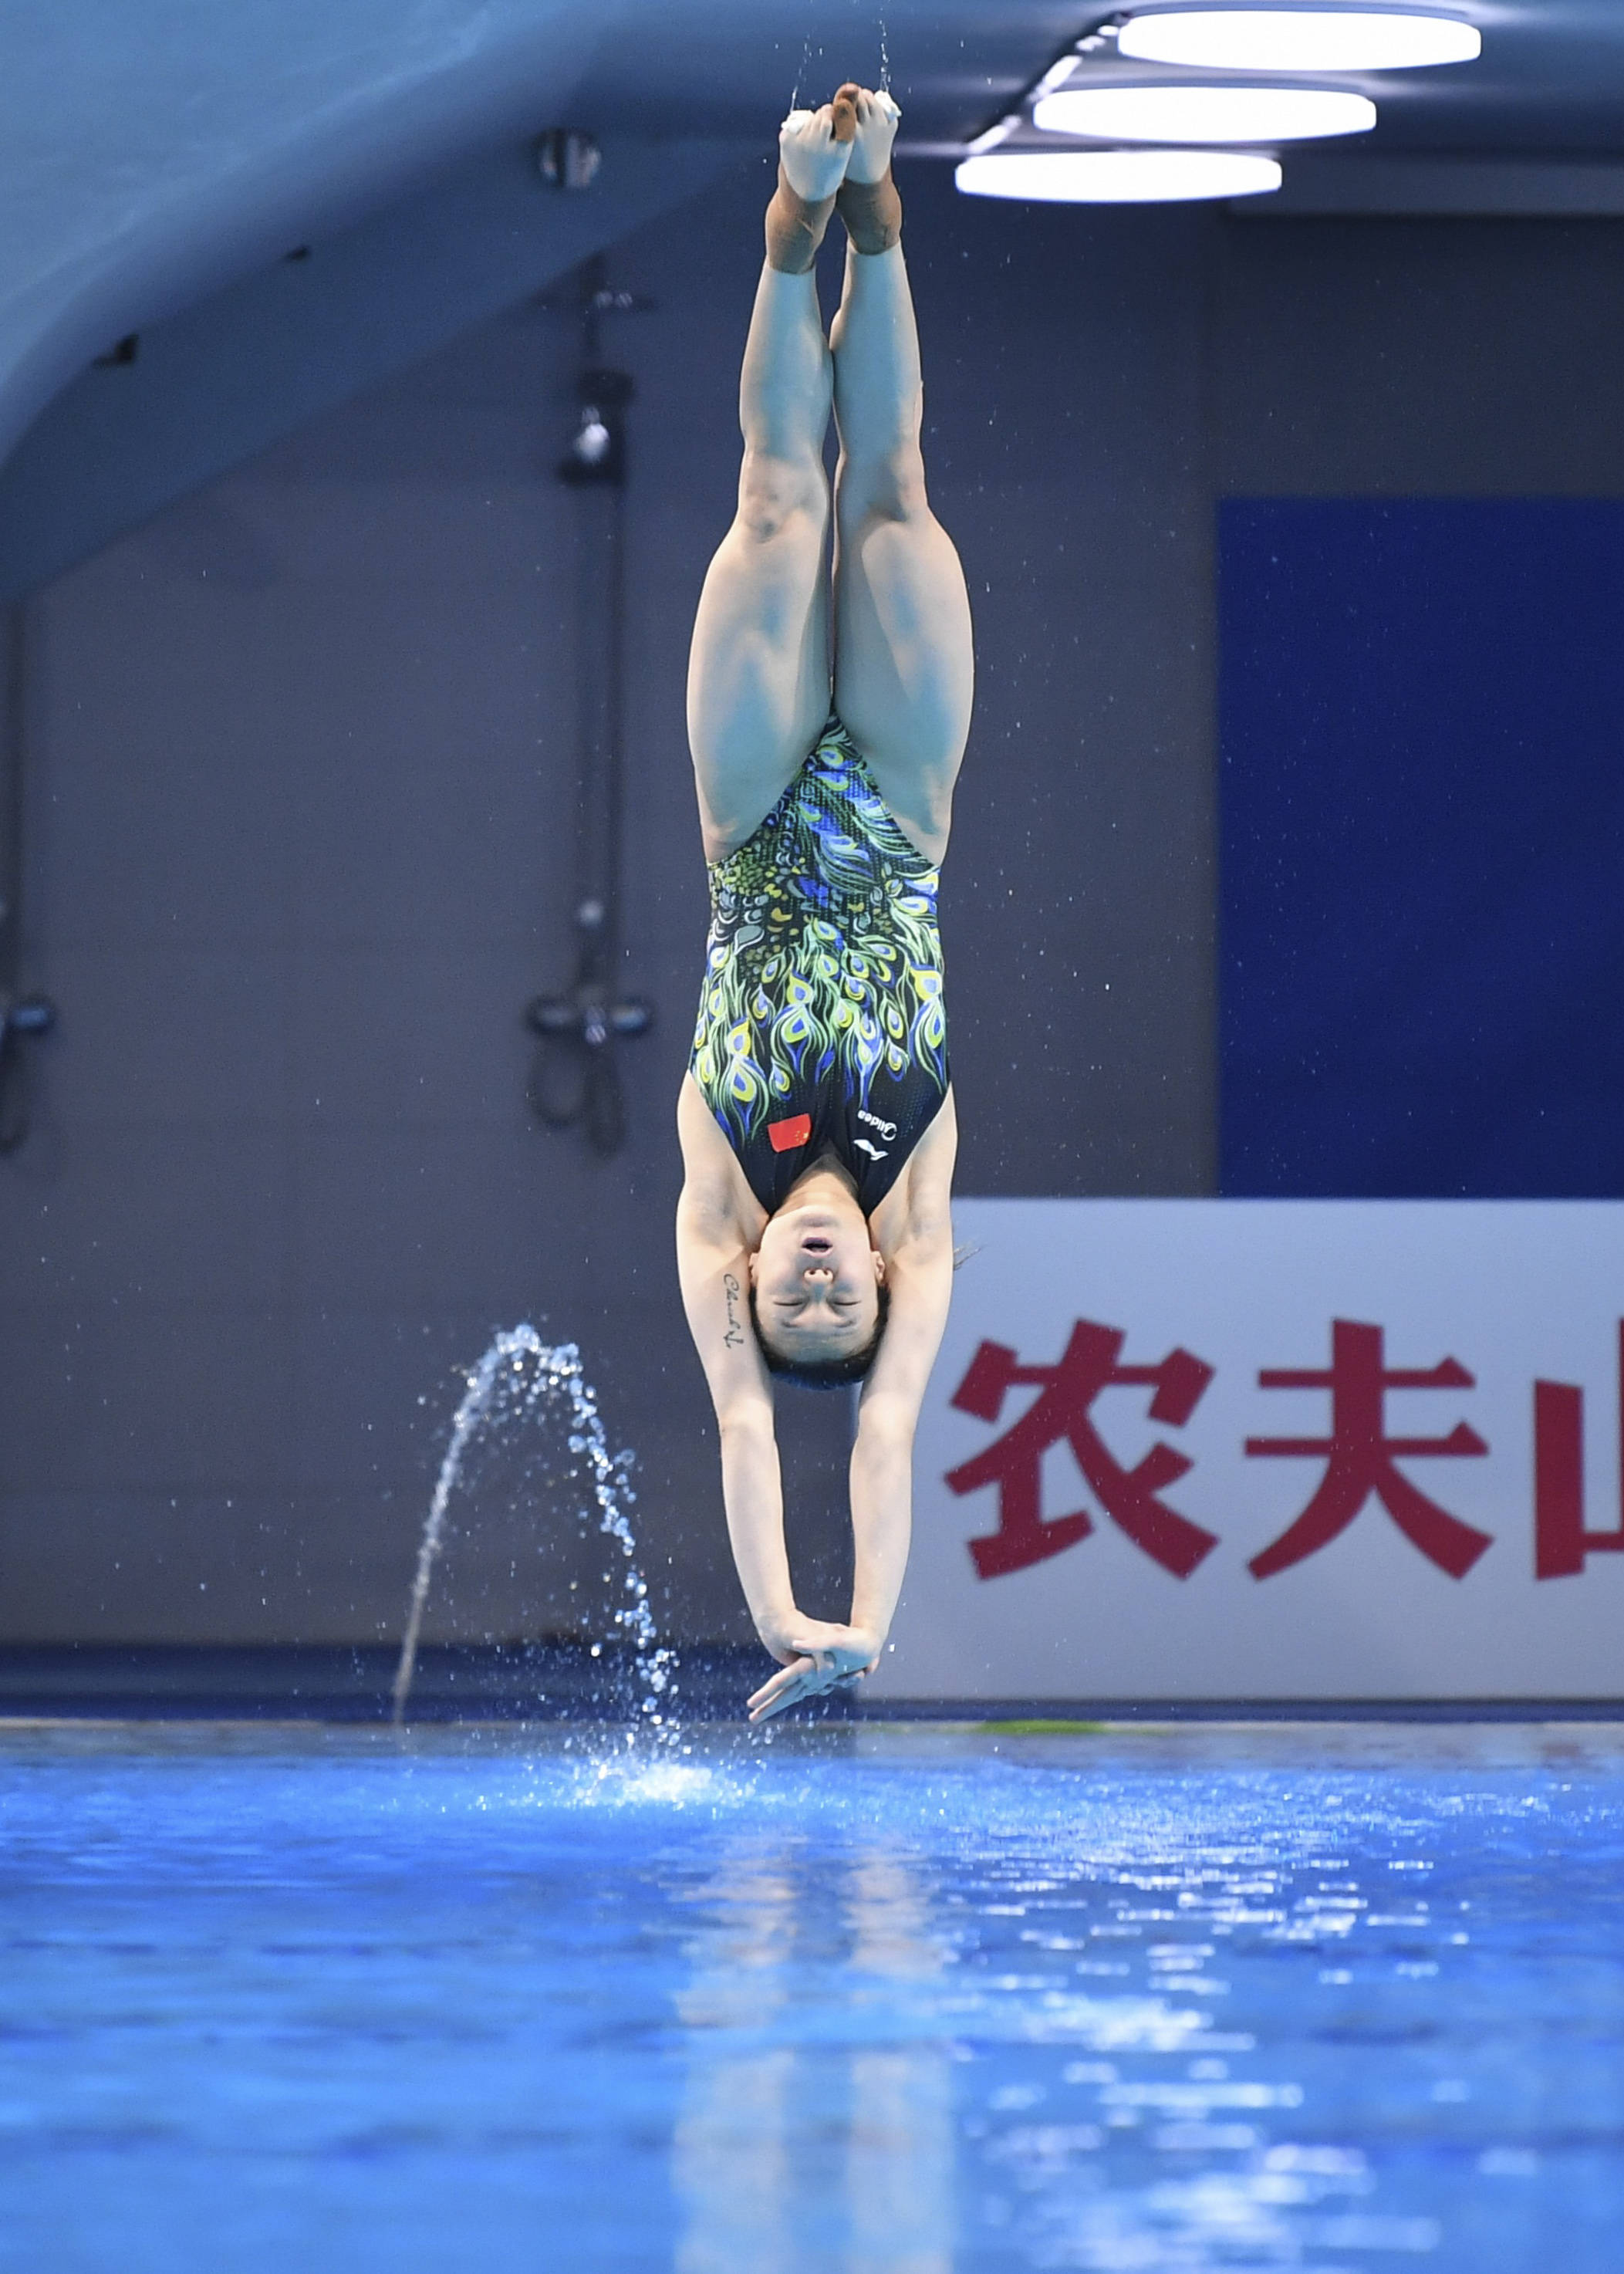 跳水——2021年中国跳水明星赛:女子三米跳板决赛赛况